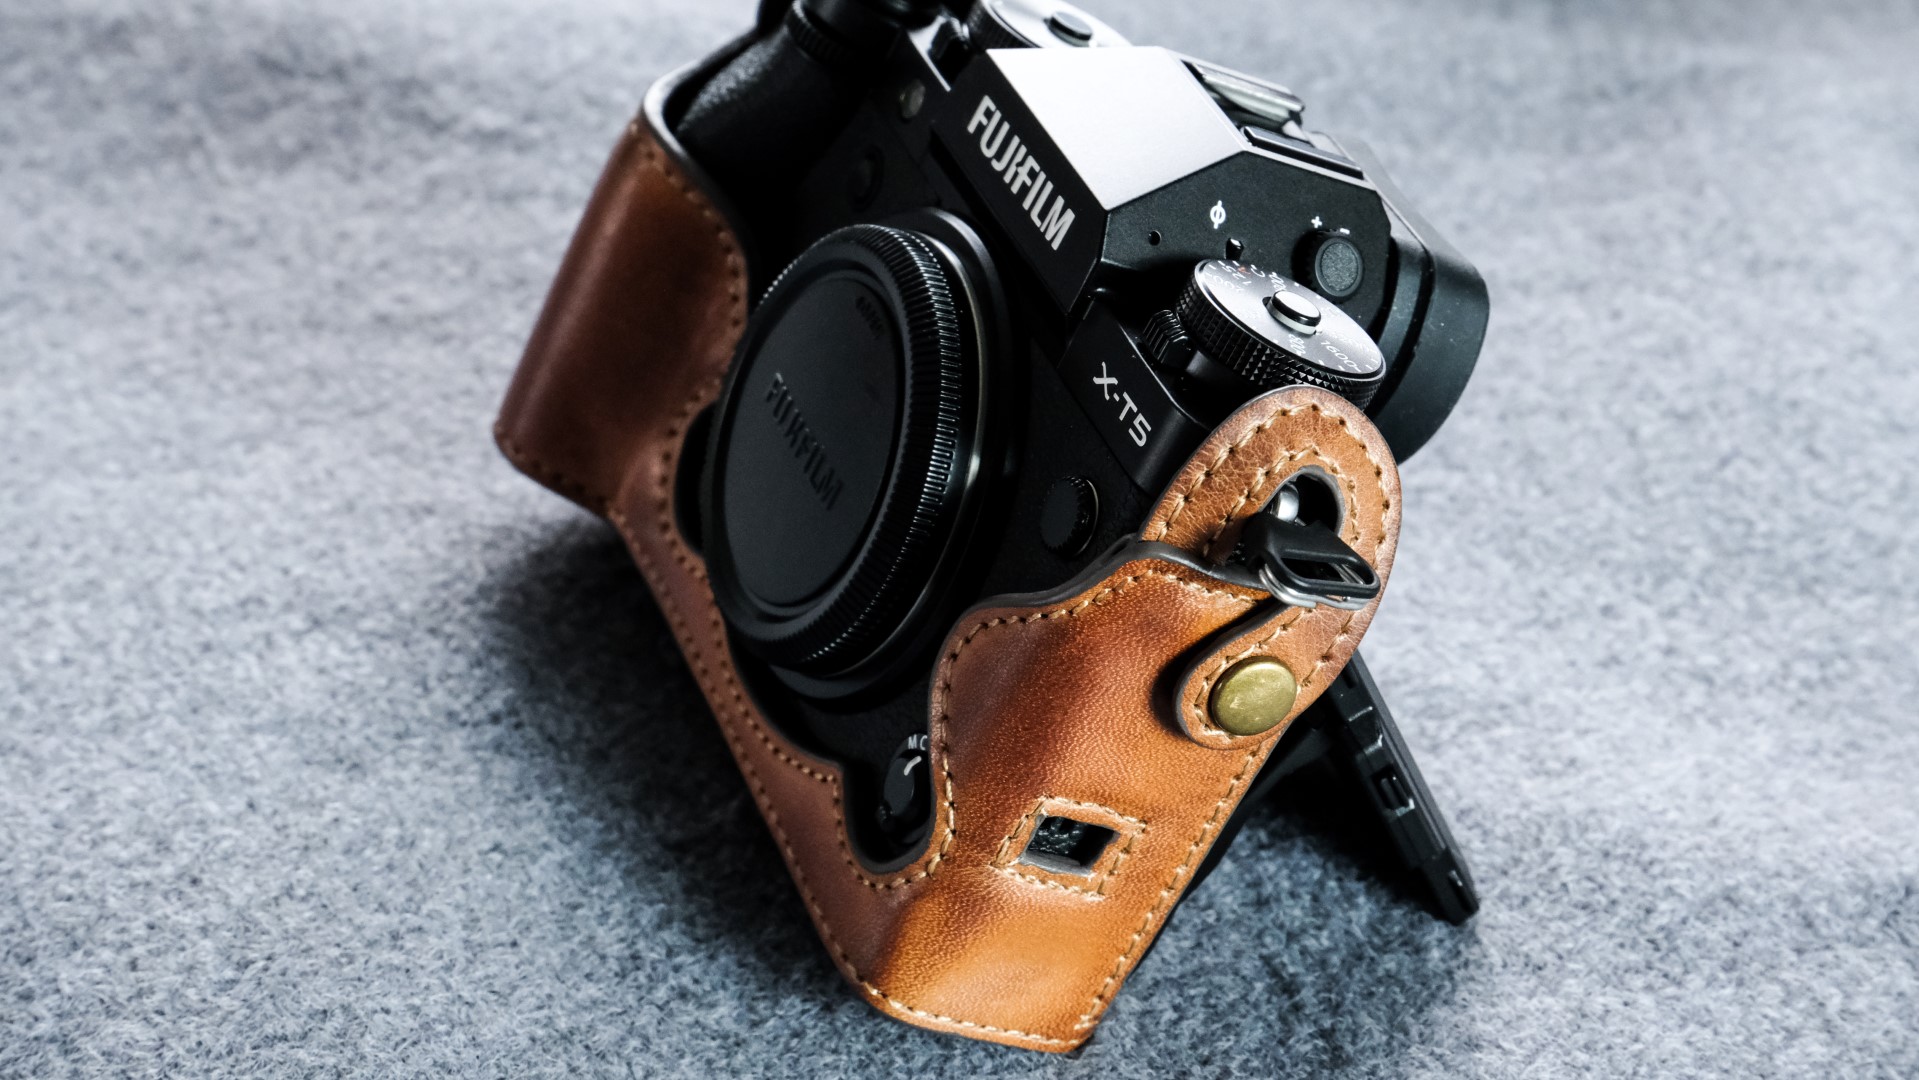 Fujifilm X-t5用カメラケース,
Fujifilm X-t5相機皮套,
Fujifilm X-t5 leather case,
Fujifilm X-t5 half case